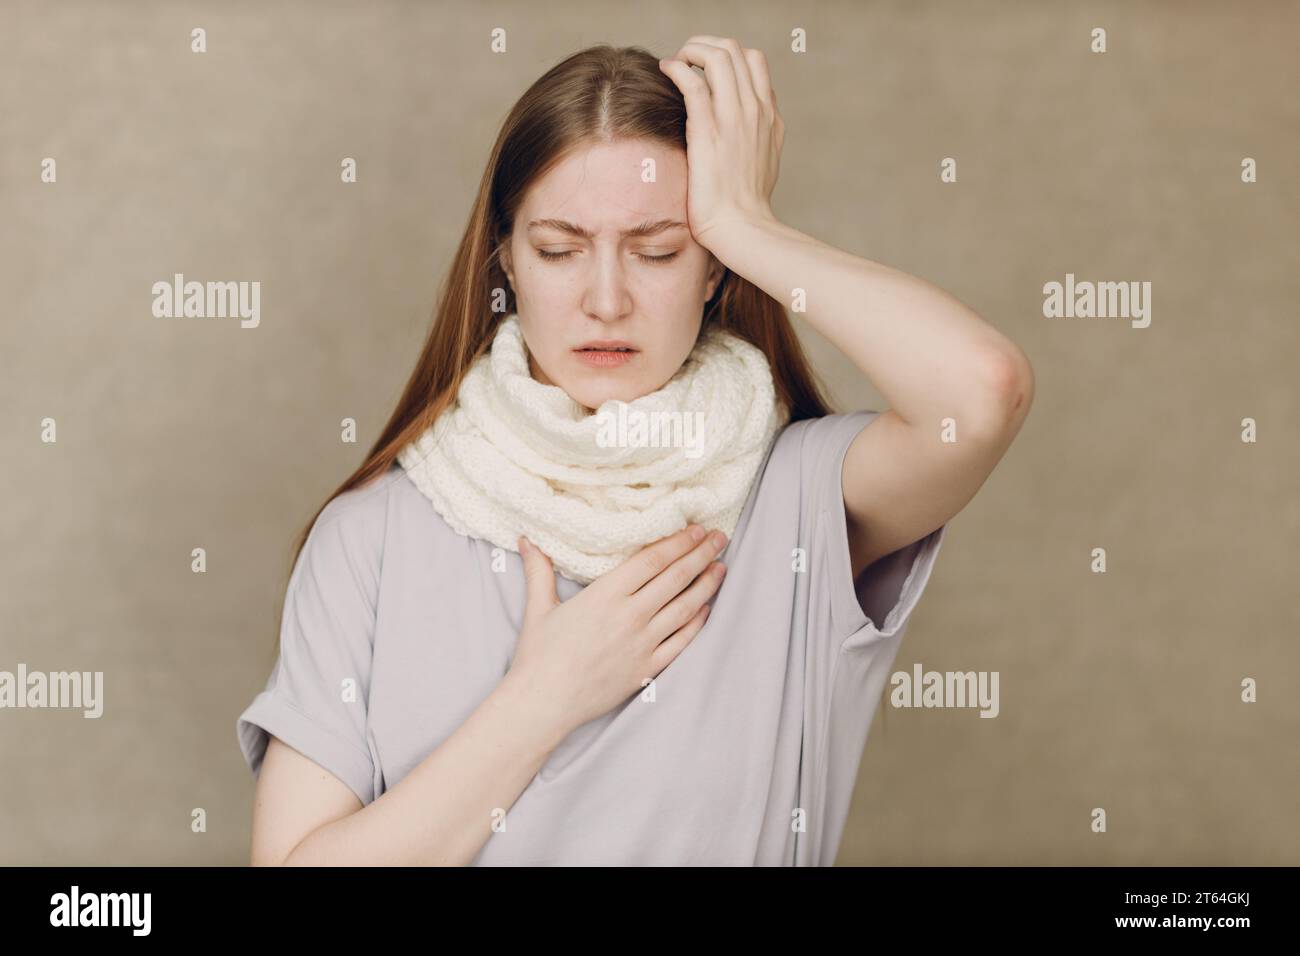 Giovane donna che indossa sciarpa tiene testa influenza catarrh malato malattia trattamento freddo Foto Stock